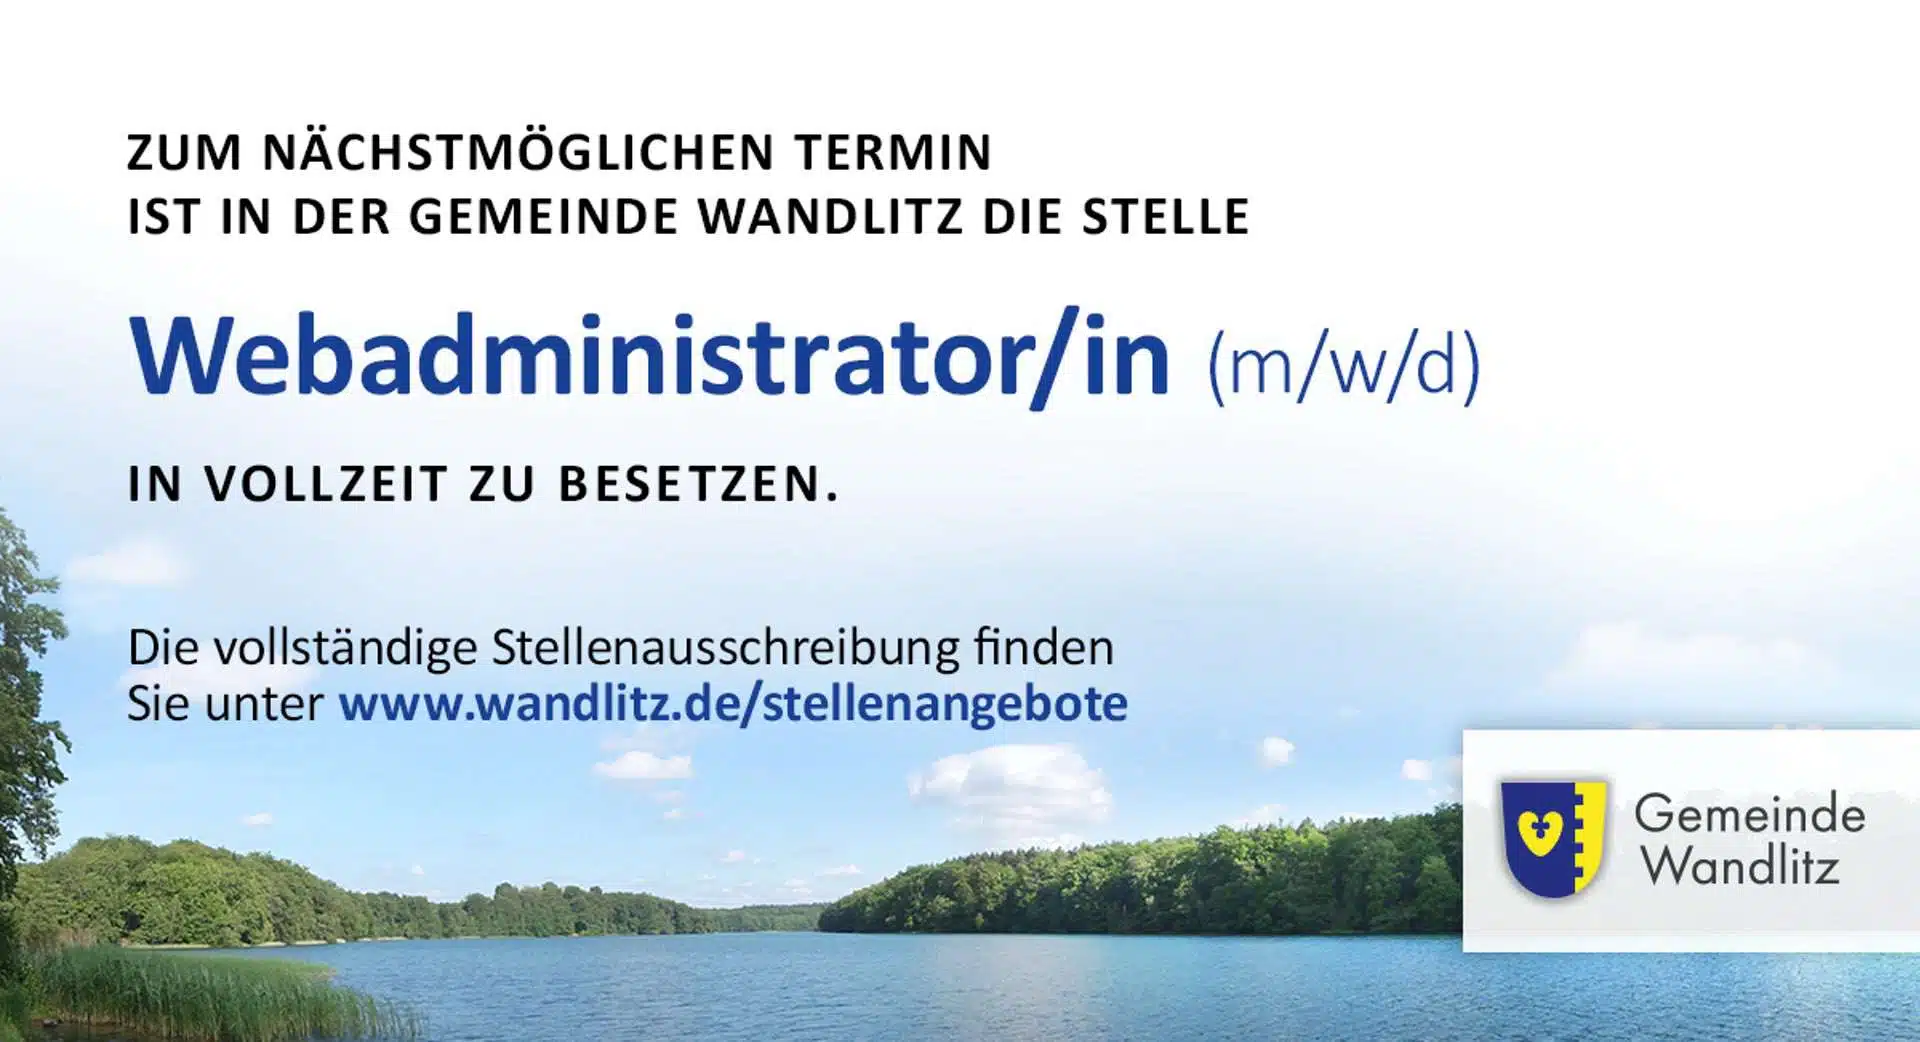 Webadministrator/in (m/w/d) in der Gemeinde Wandlitz